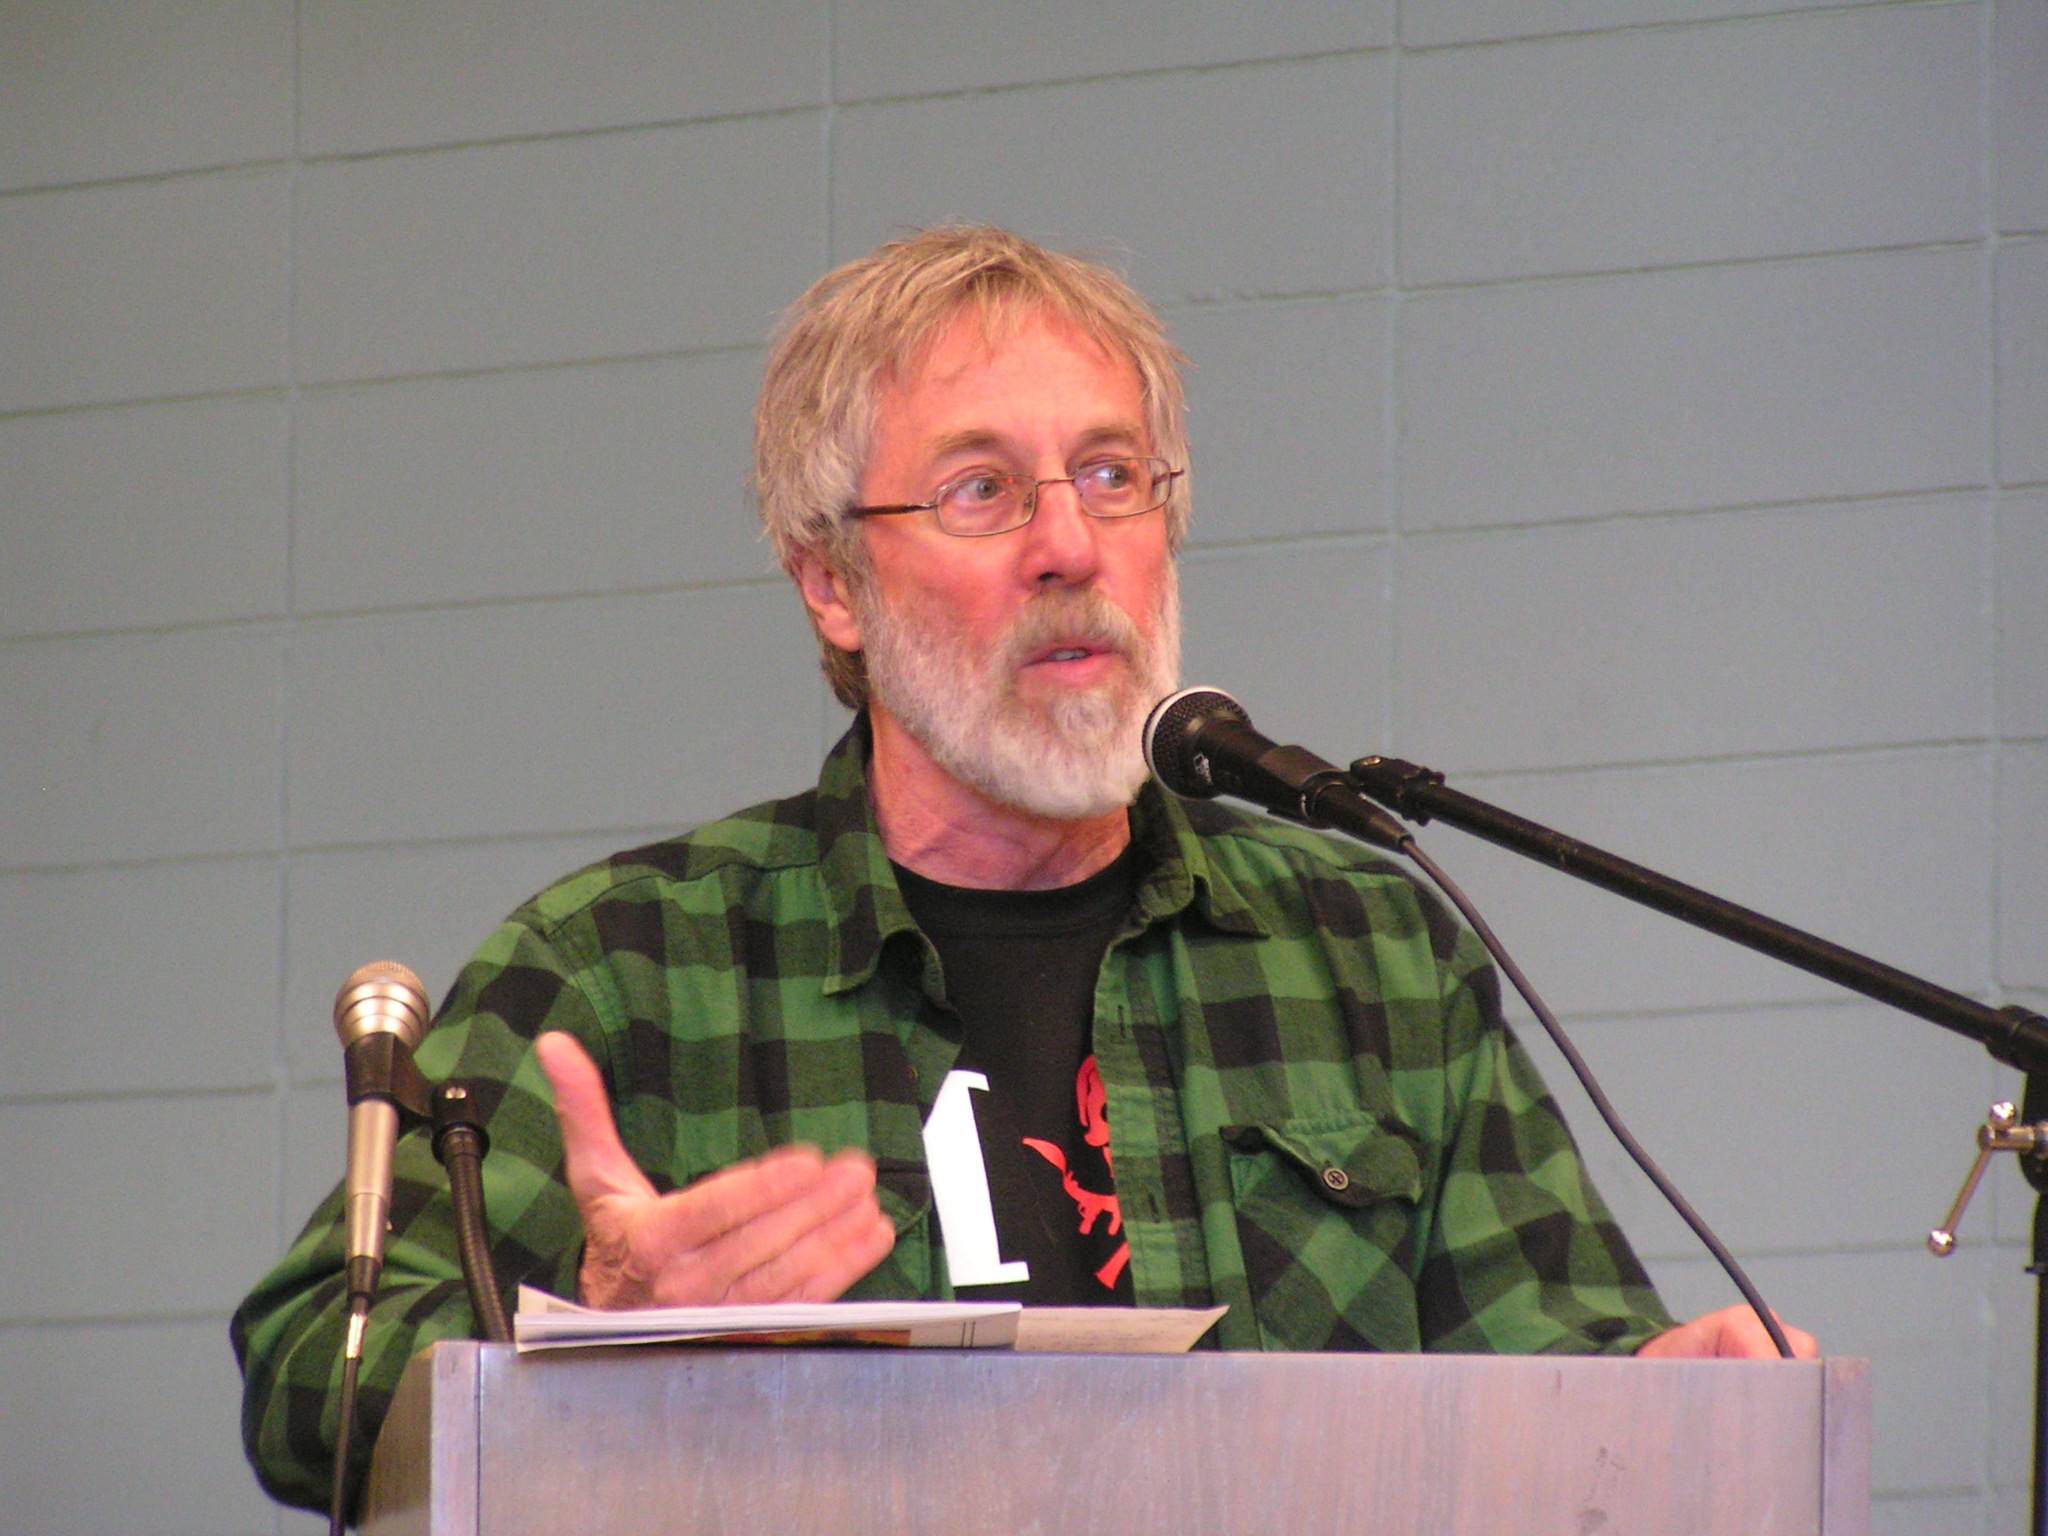 Foto de John Zerzan John Zerzan en 2010 en San Francisco Anarchist Bookfair (Fuente Wikipedia: CC BY 3.0)